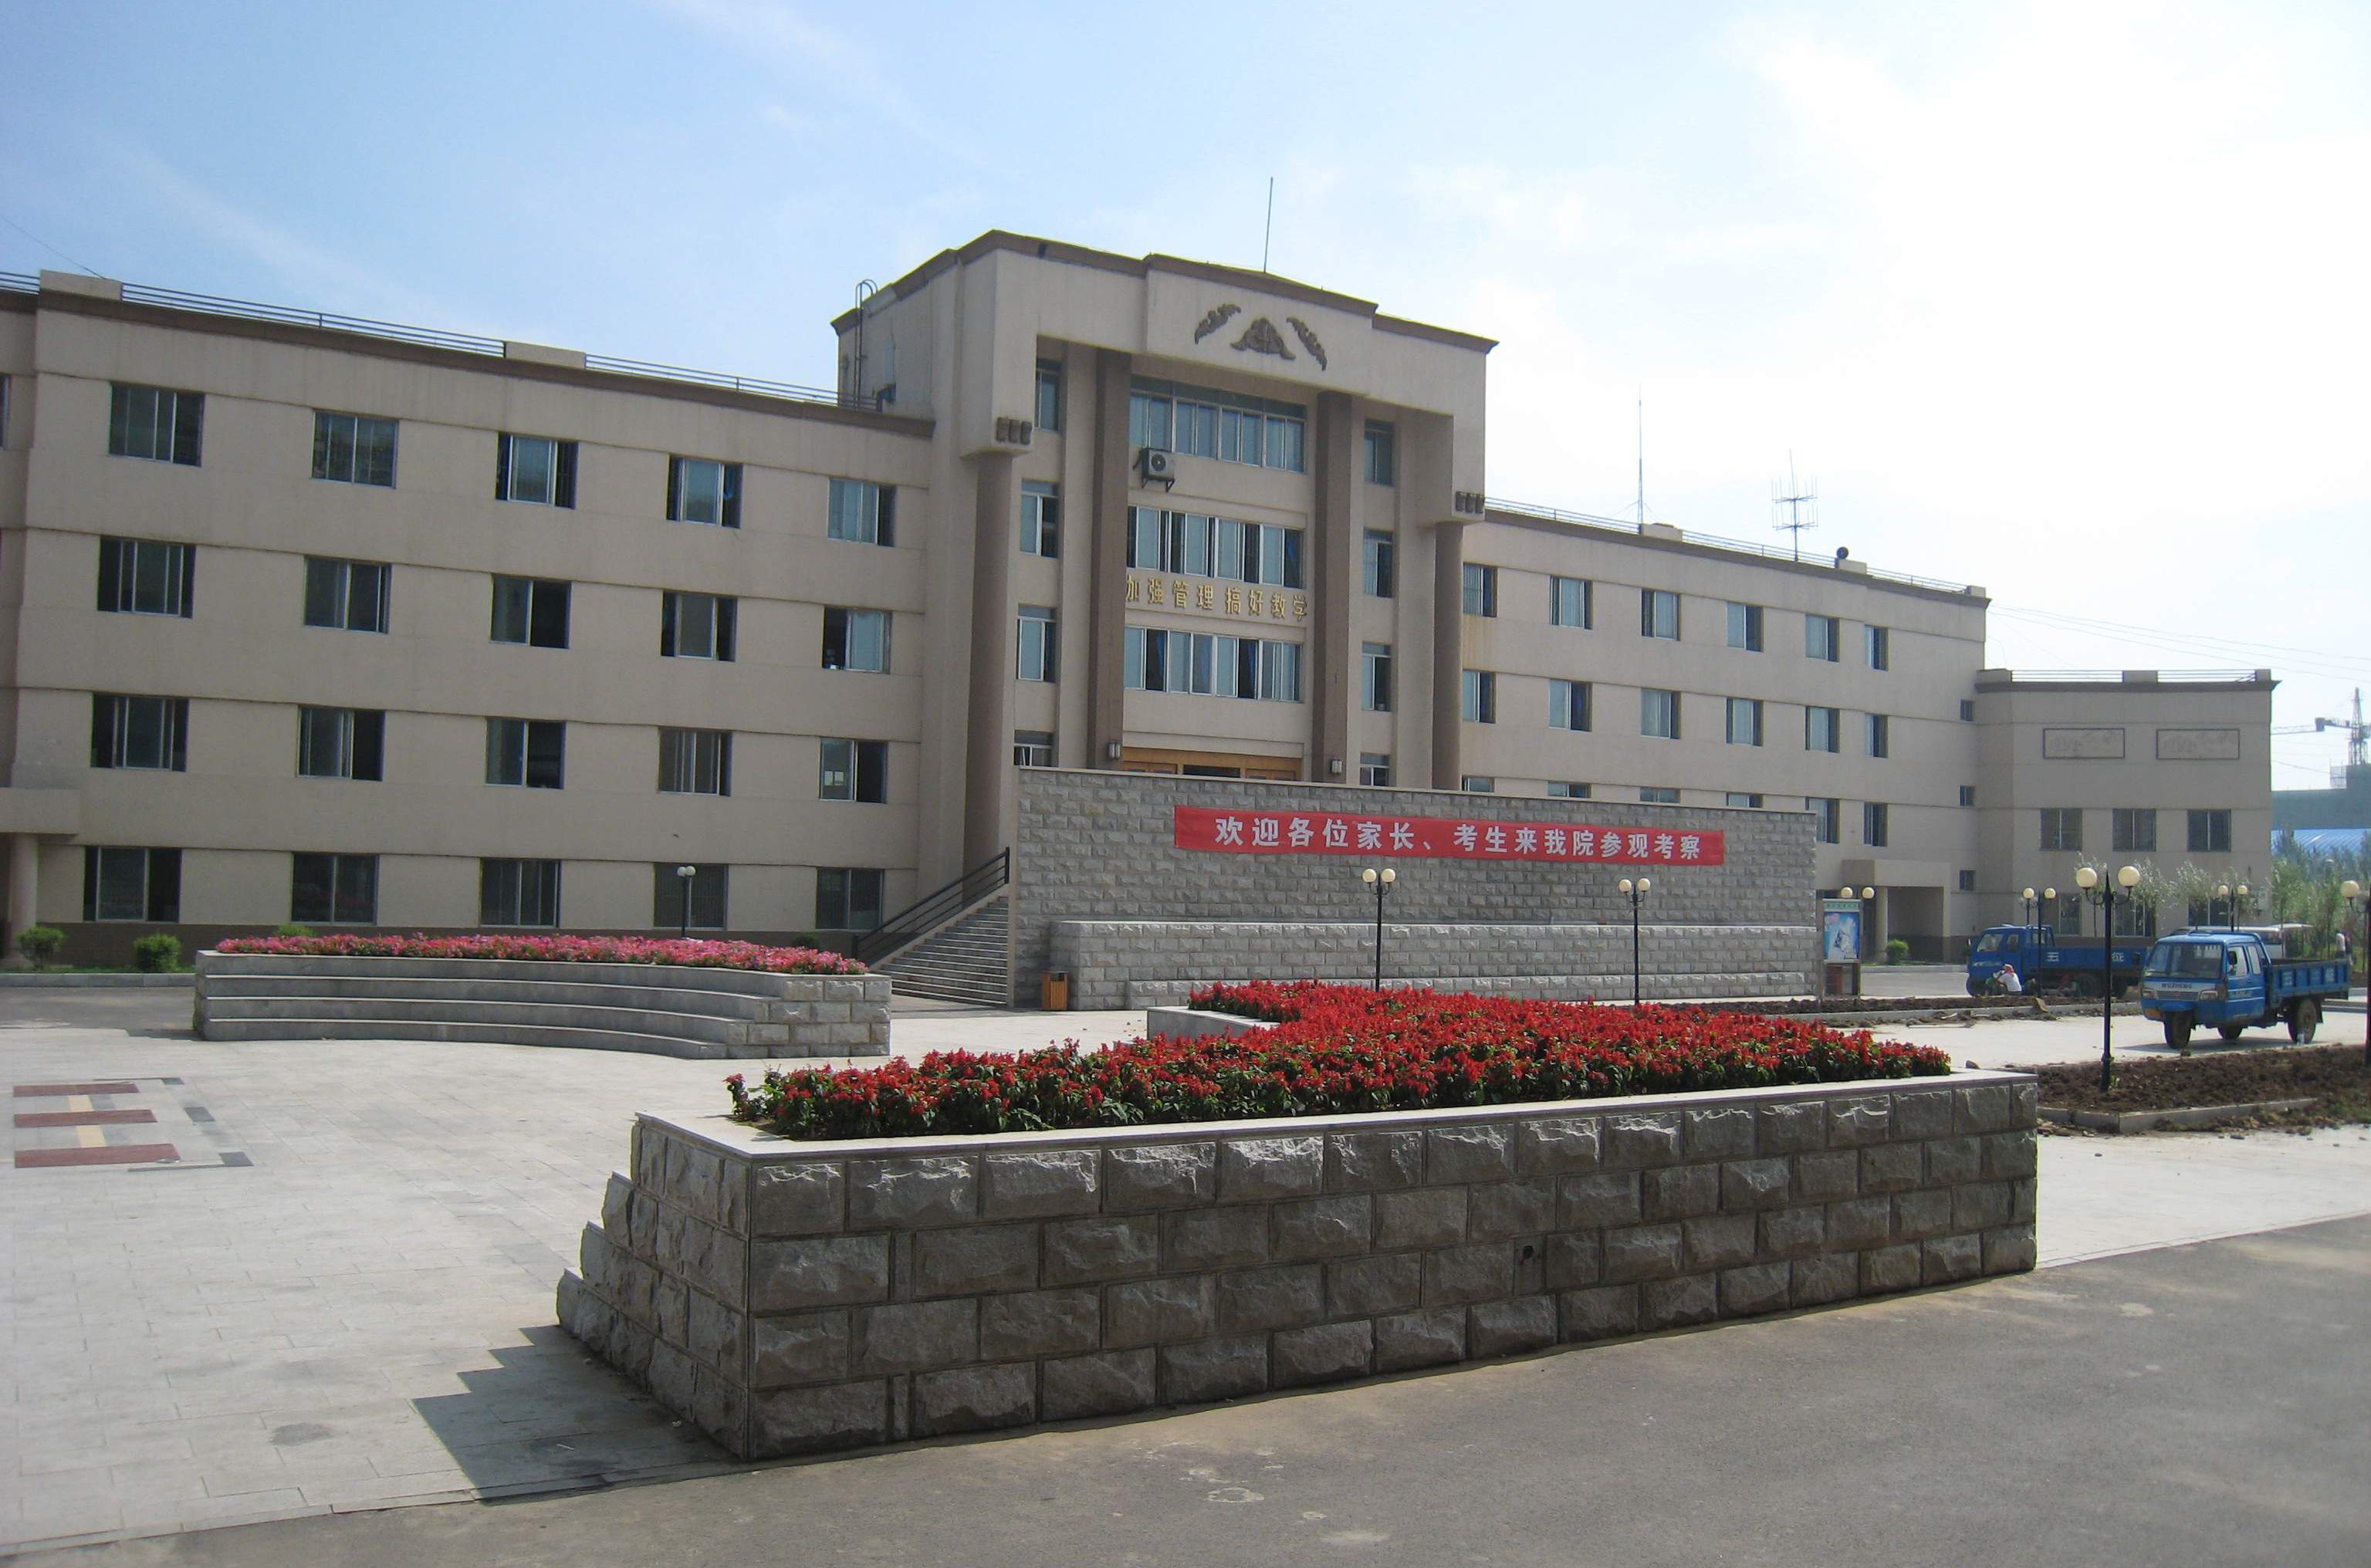 遼寧廣告職業學院校園風景